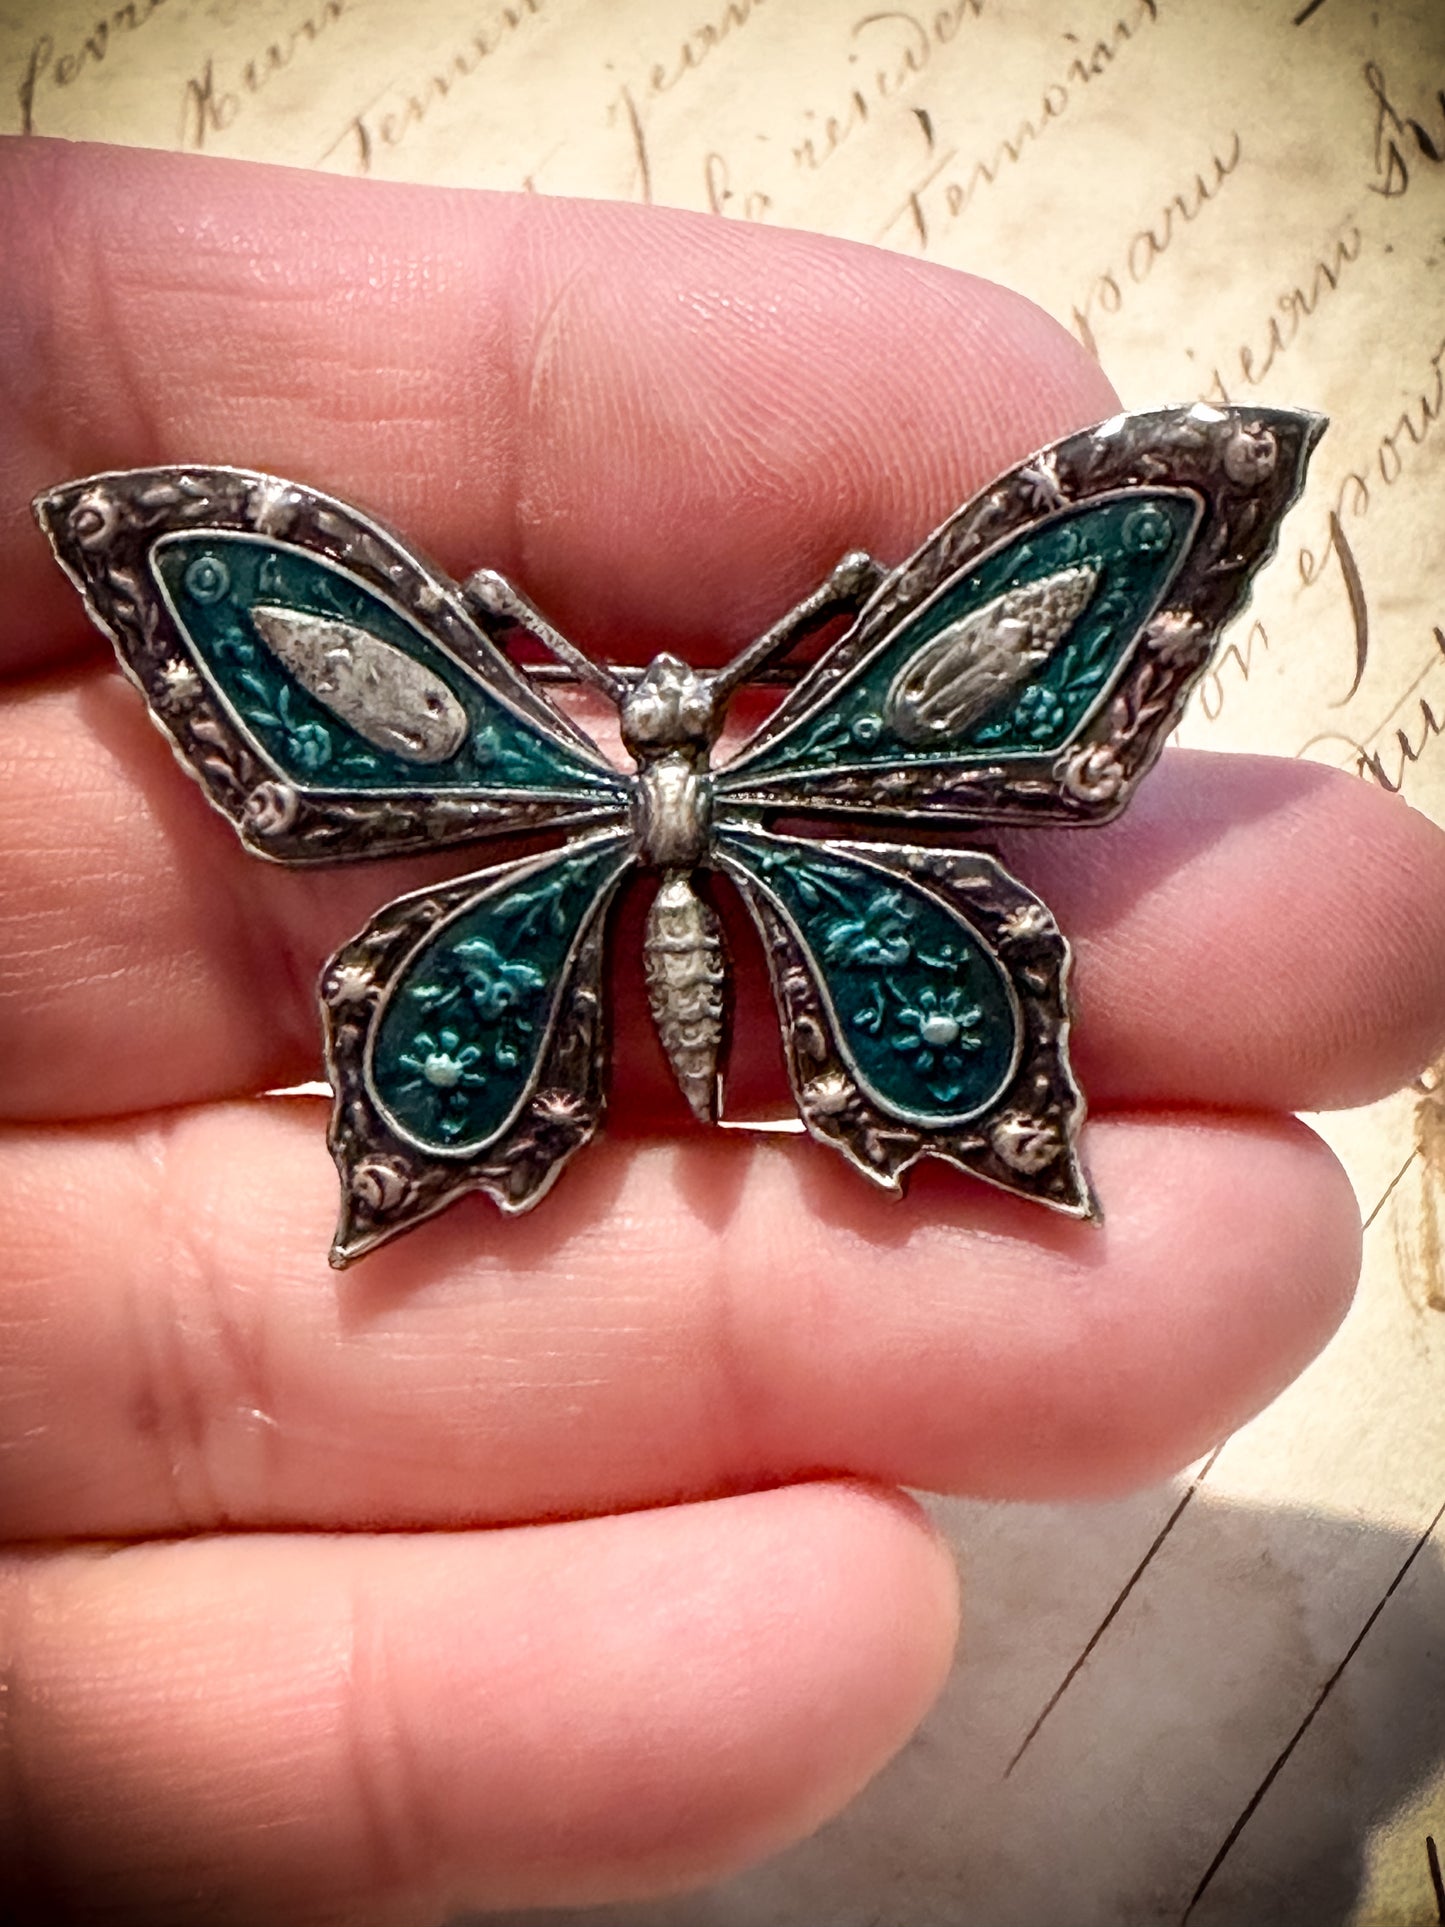 A pretty vintage enamel butterfly brooch